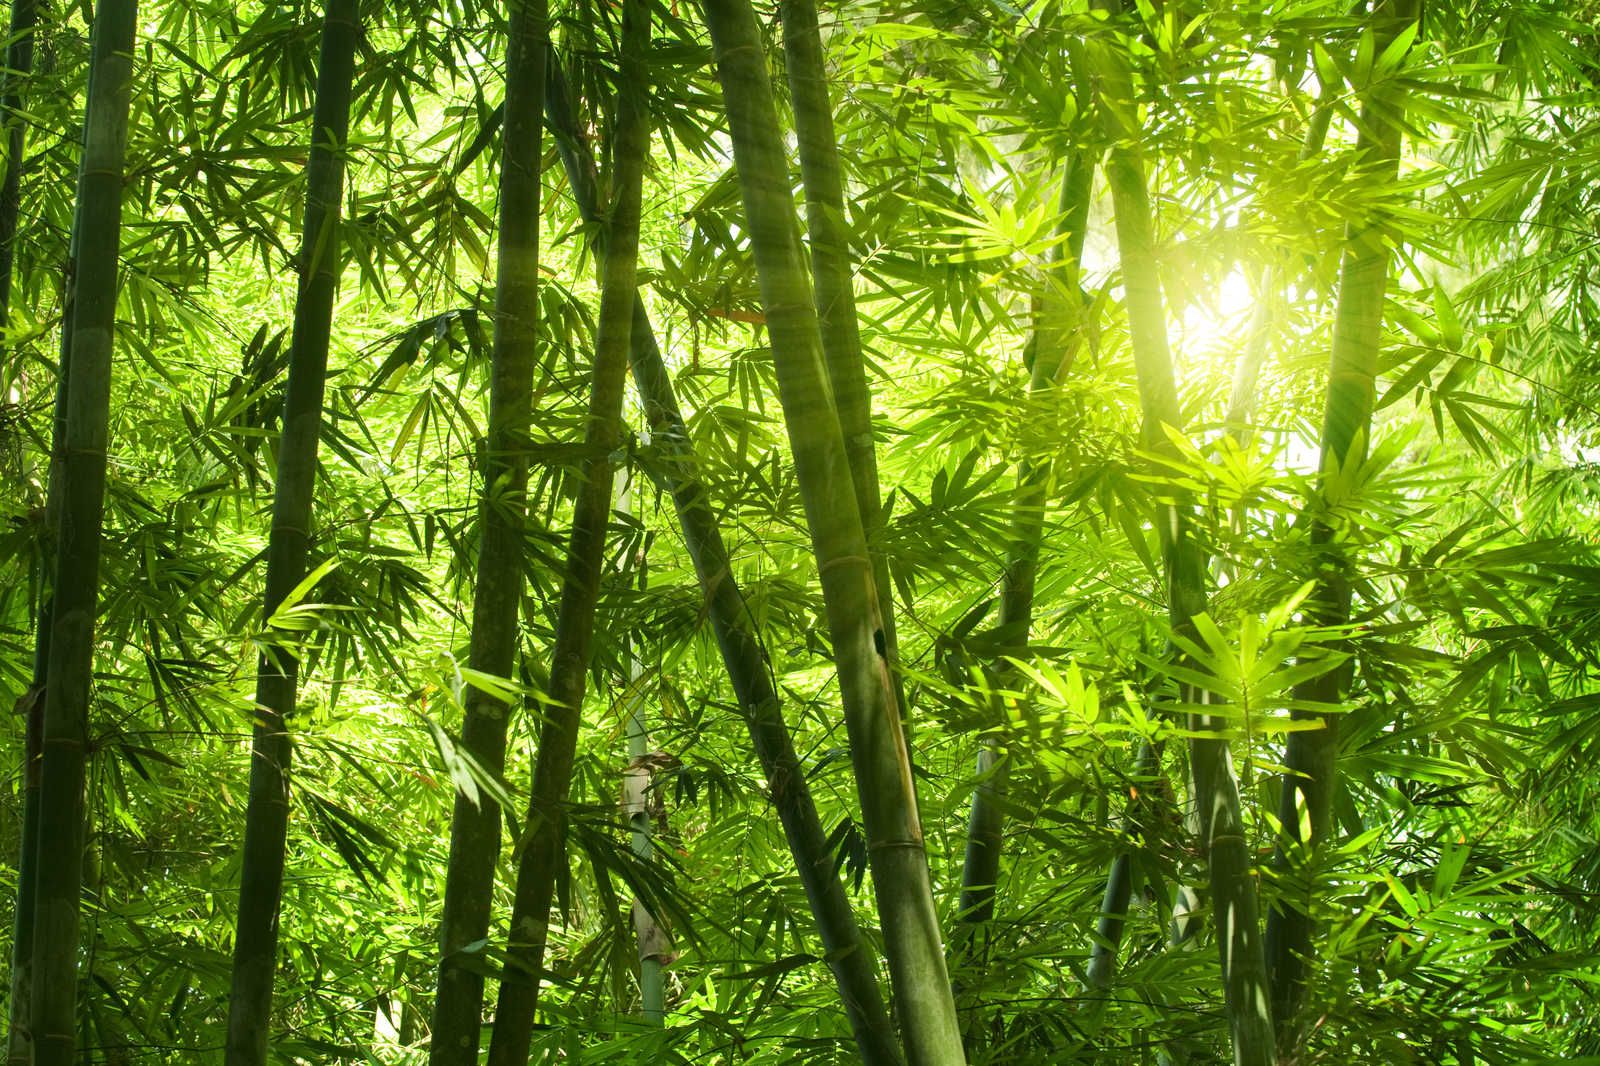             Cuadro en lienzo Bambú y hojas - 1,20 m x 0,80 m
        